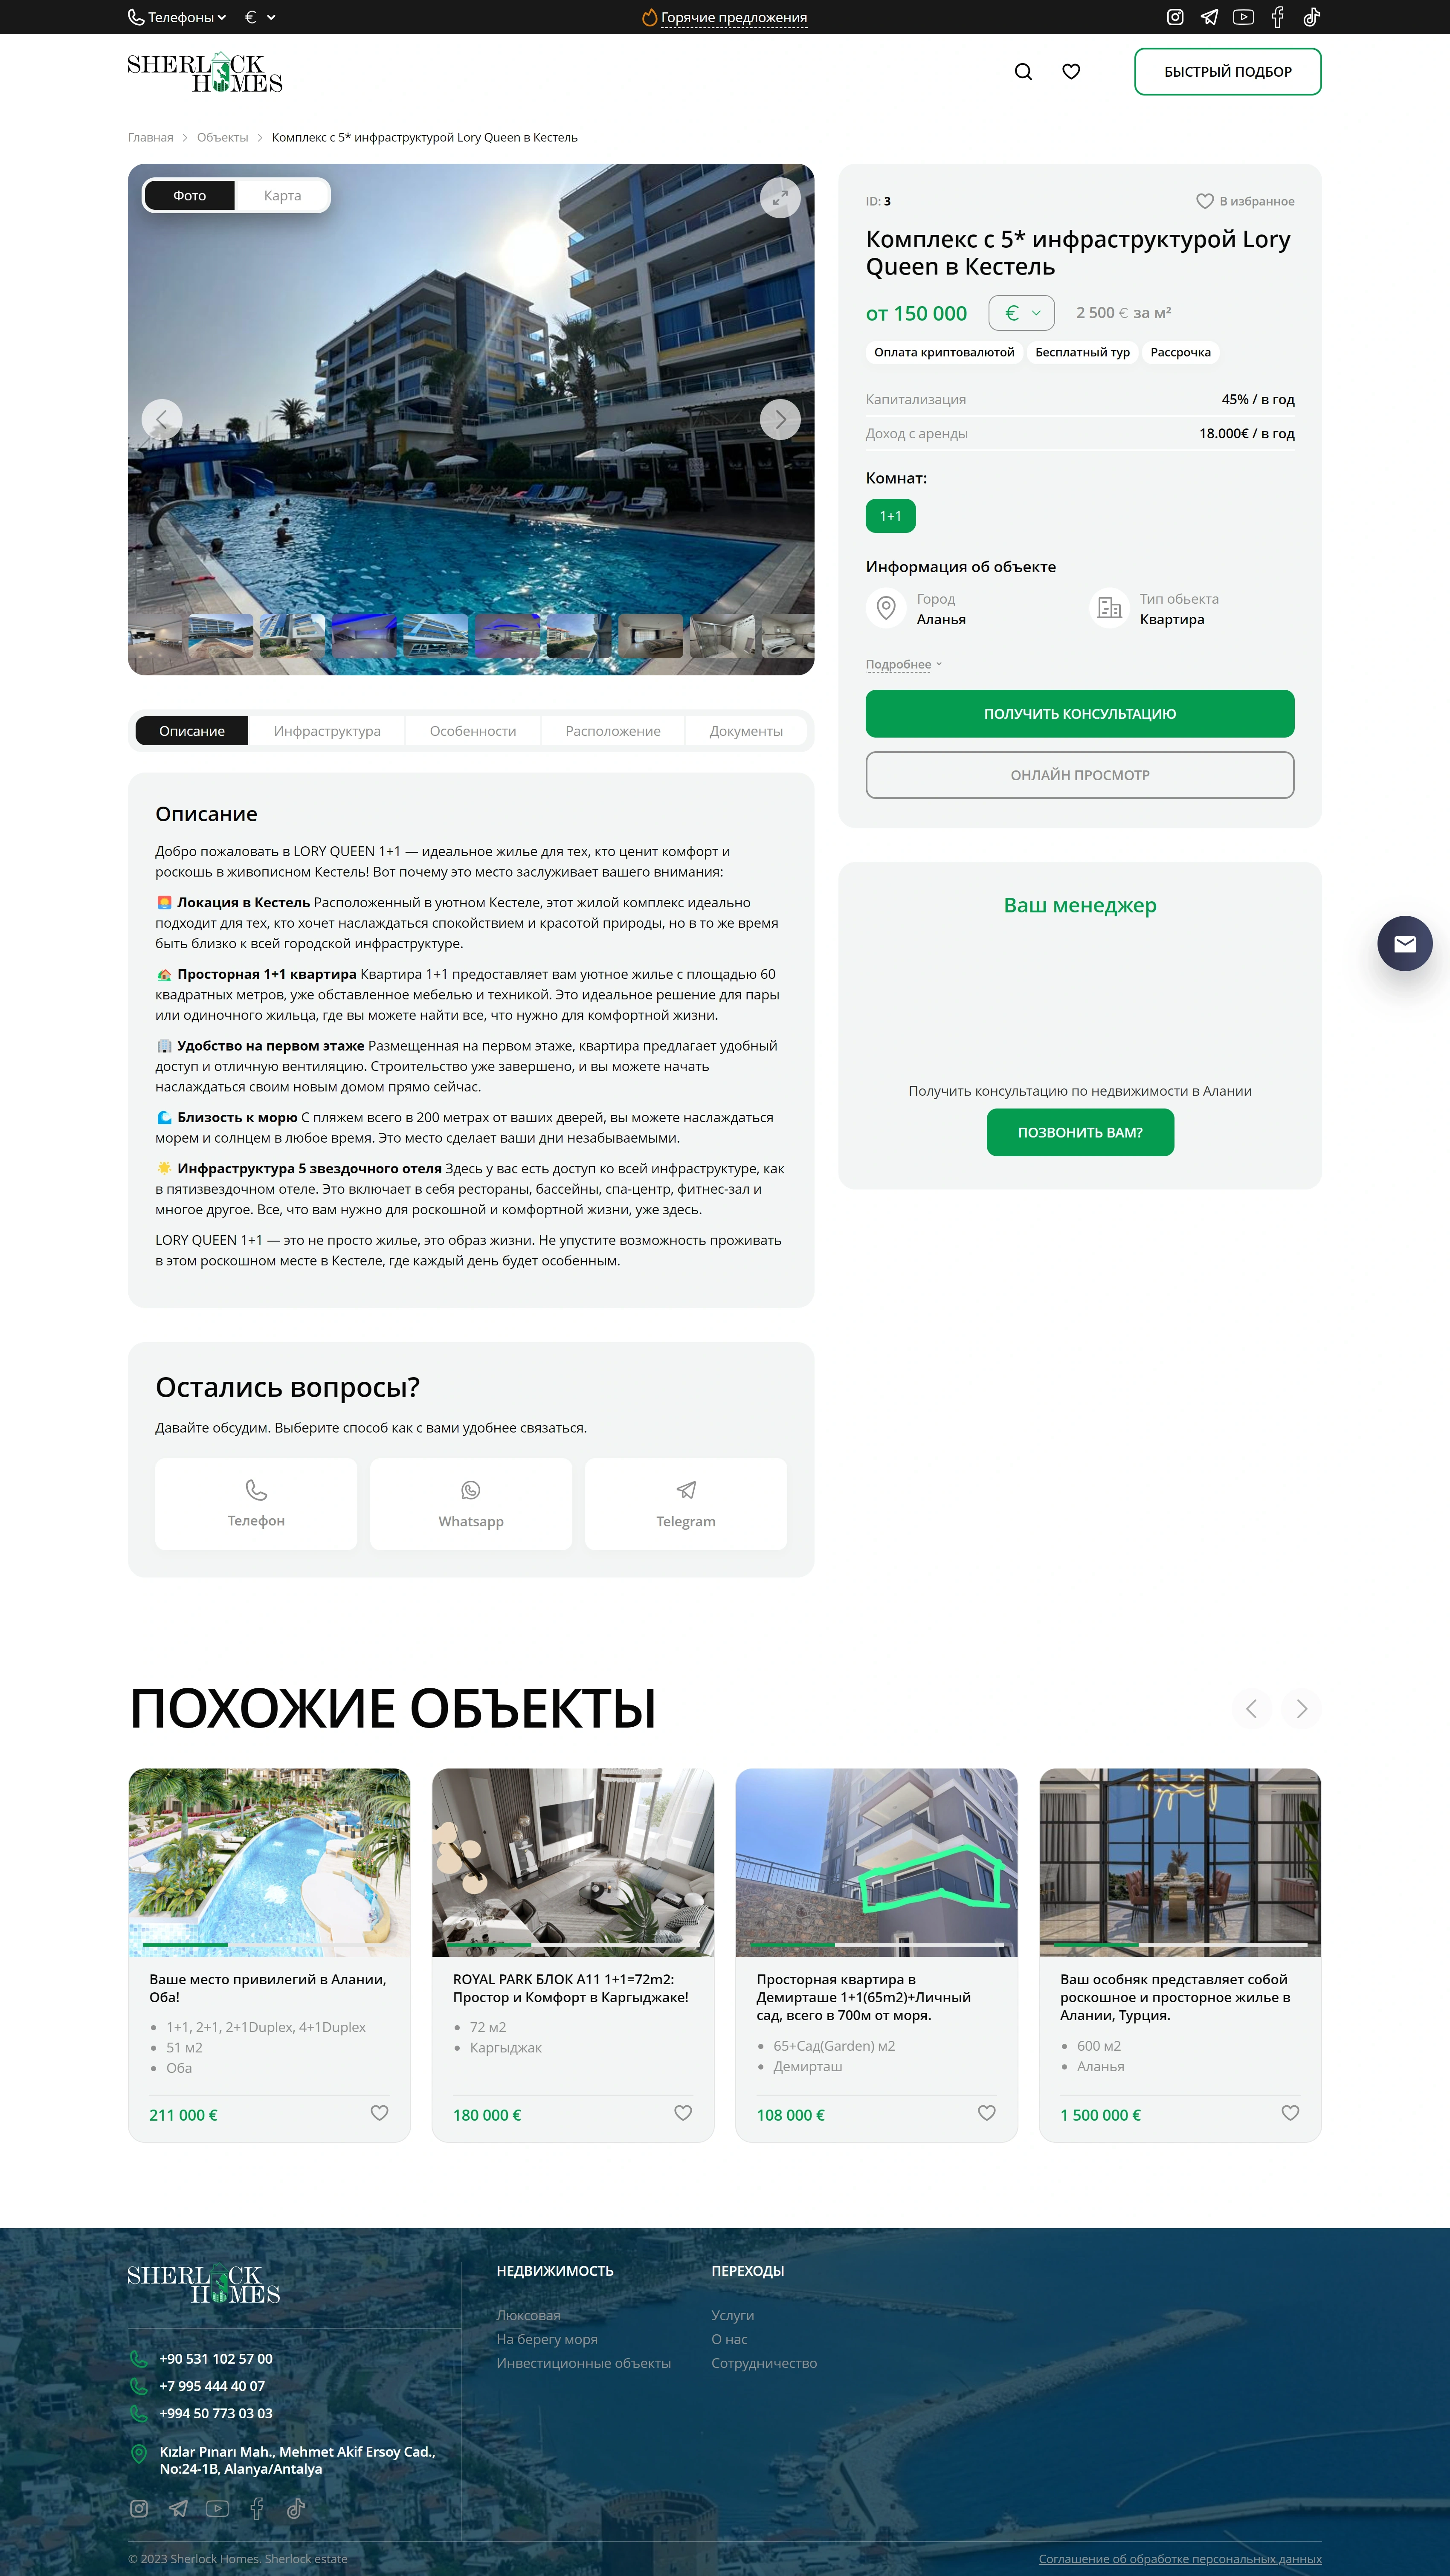 sherlockestate.ru_property_6-komn-kvartira-5-etazh-dom-rossiya_.png